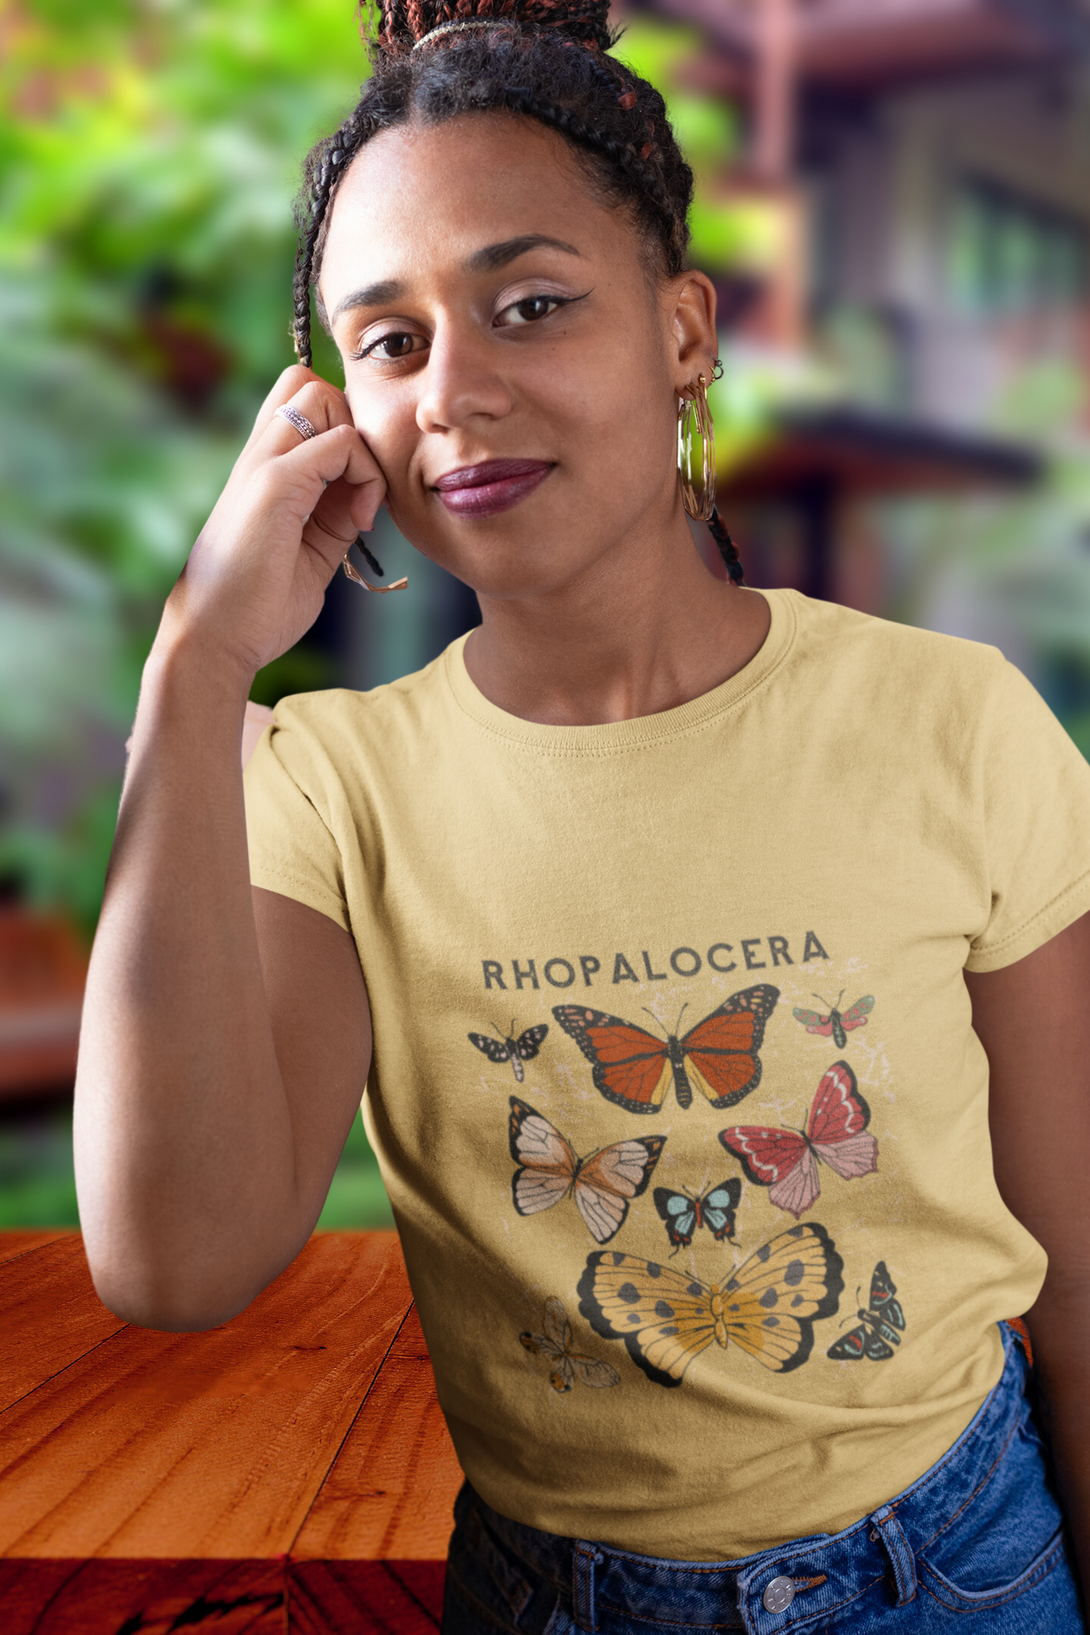 Rhopalocera Printed T-Shirt For Women - WowWaves - 5